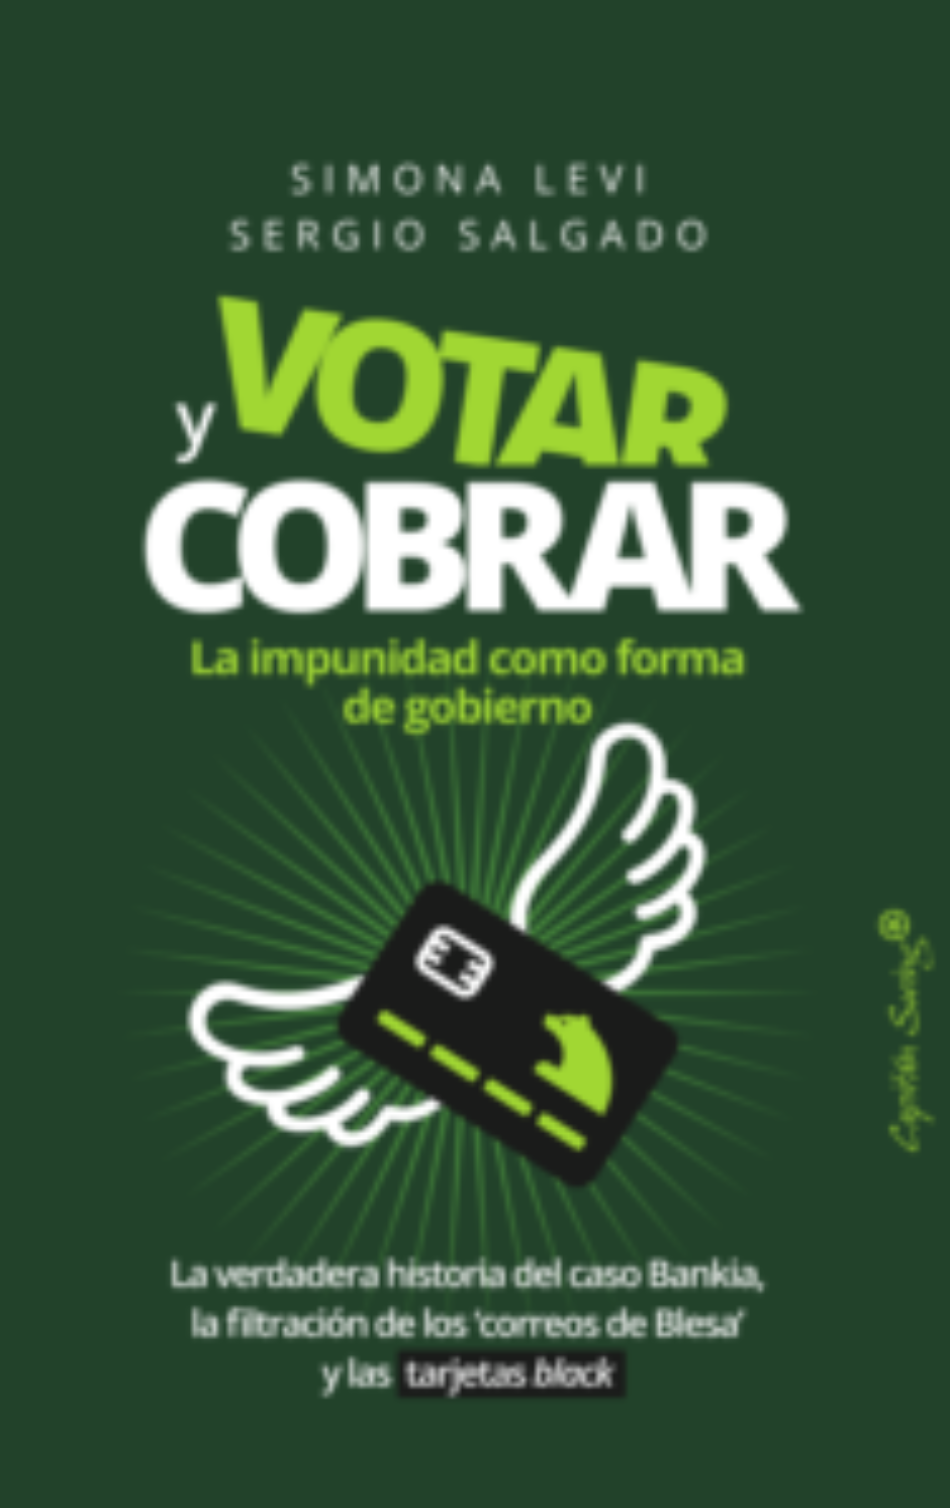 “Votar y cobrar: la impunidad como forma de gobierno” – La verdadera historia del Caso Bankia, la filtración de los correos de Blesa y las Tarjetas Black